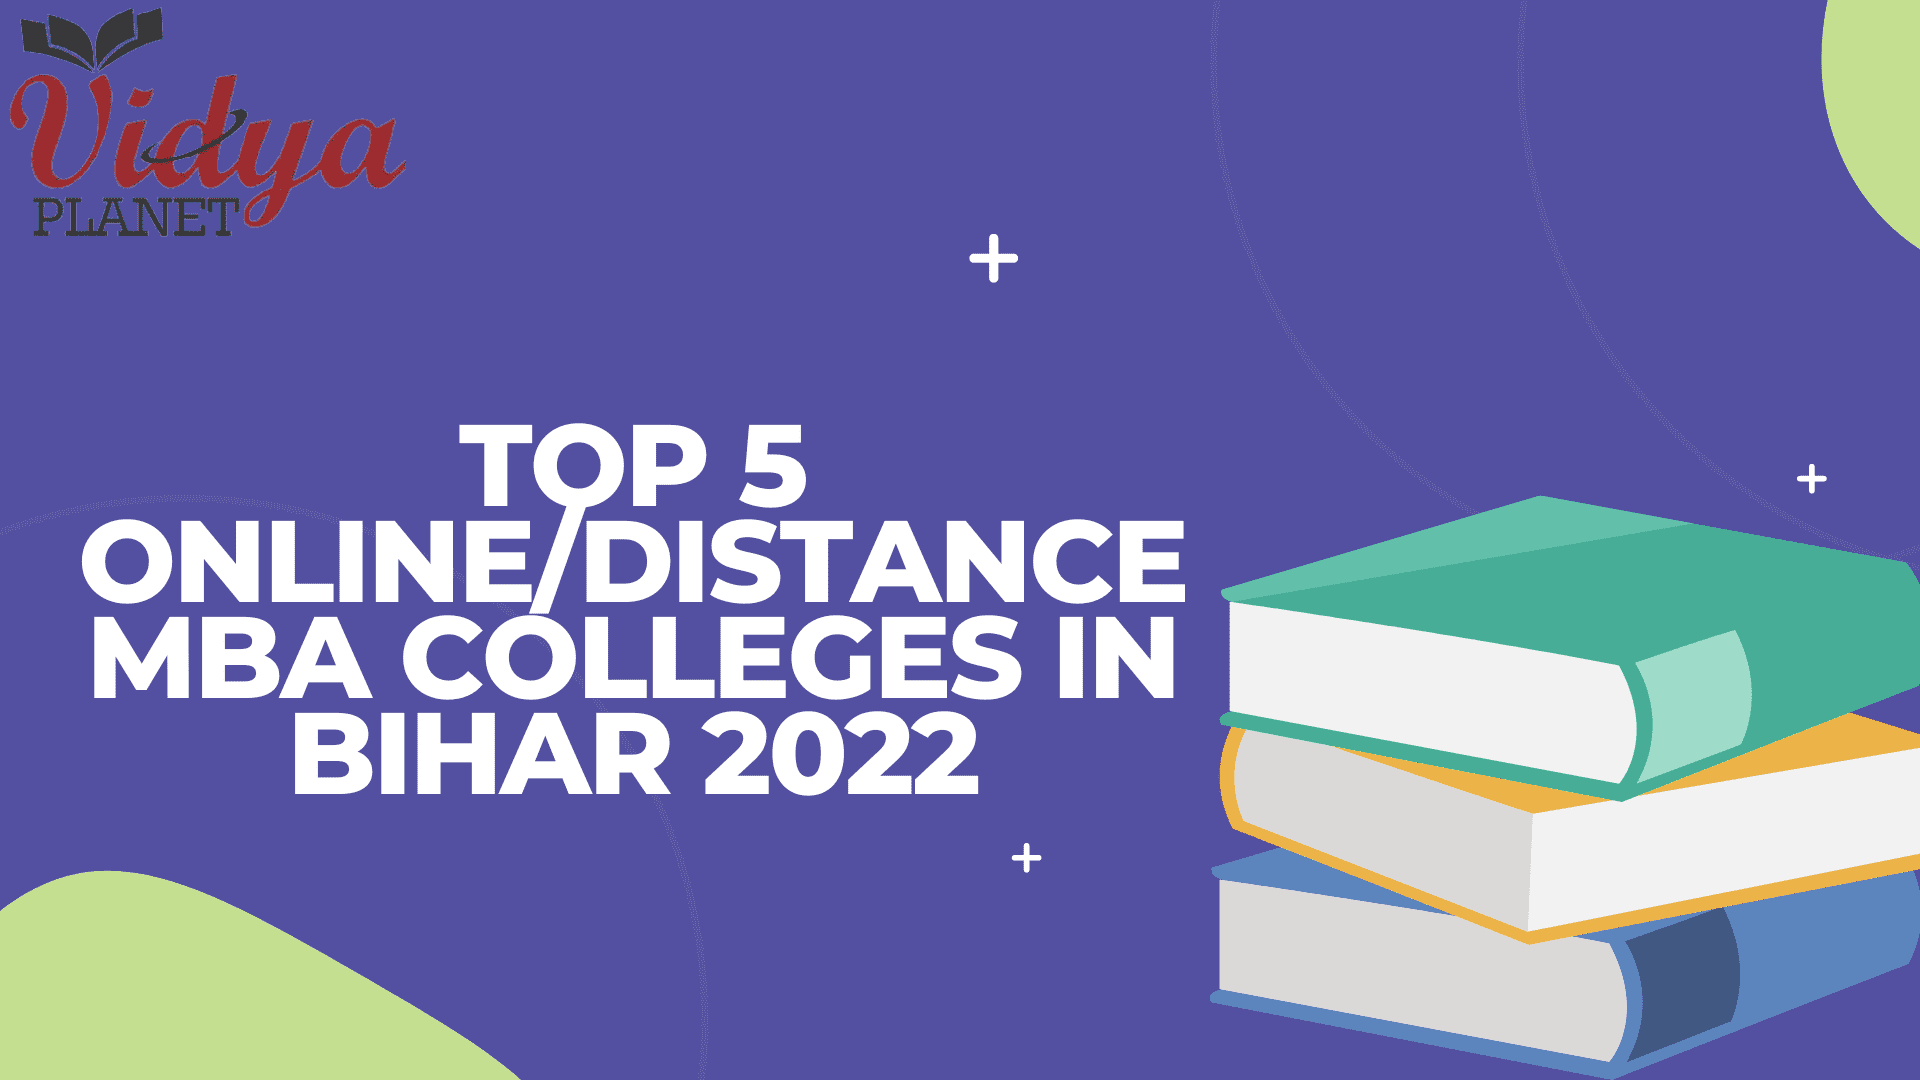 Top 5 Online/Distance MBA Colleges In Bihar 2022